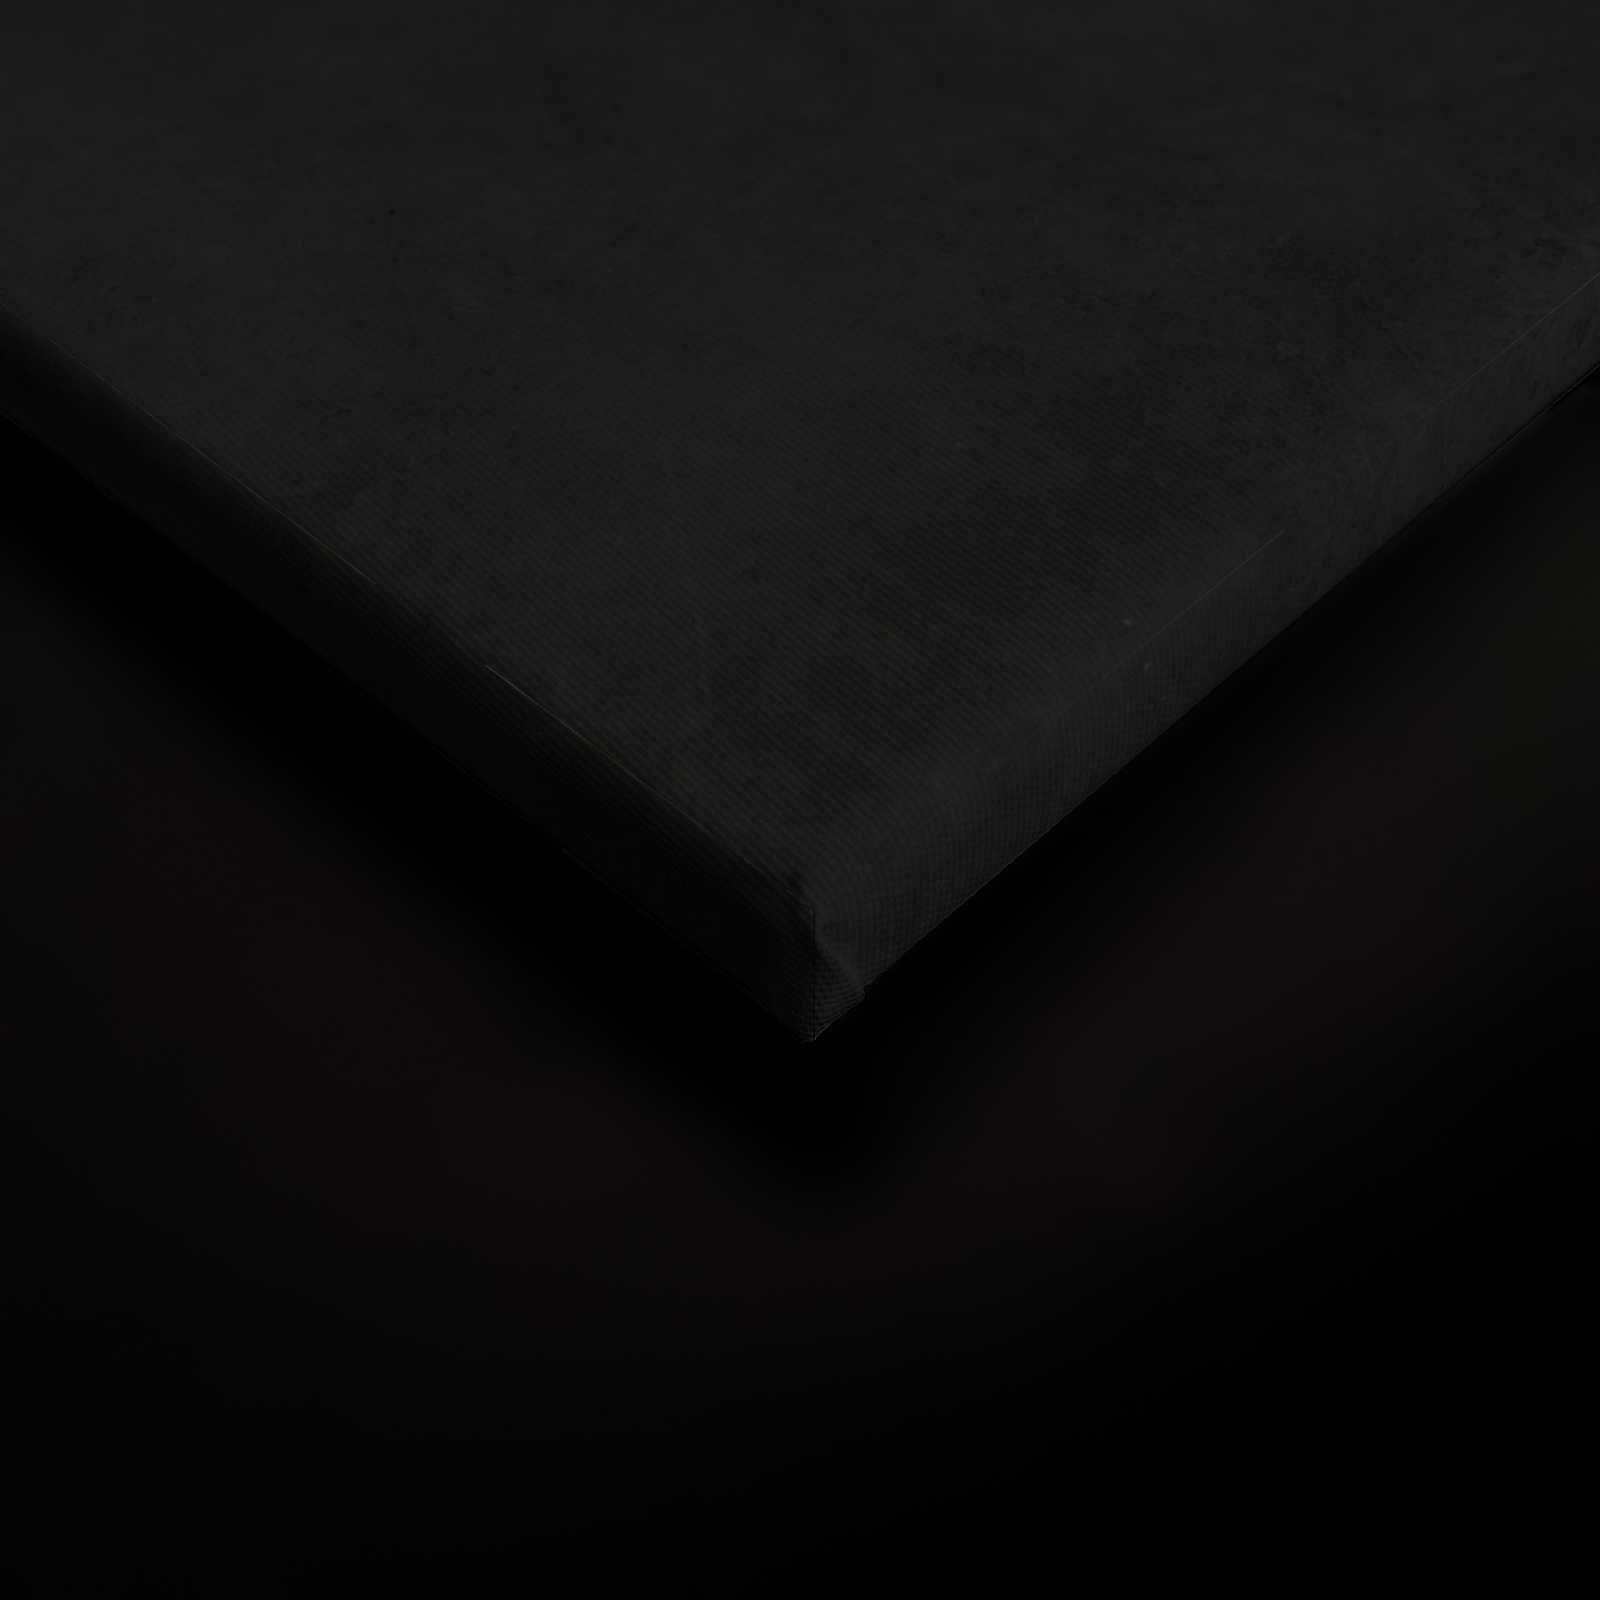             Giardino di mezzanotte 2 - Quadro su tela nera Ramo di fiori bianchi - 0,60 m x 0,90 m
        